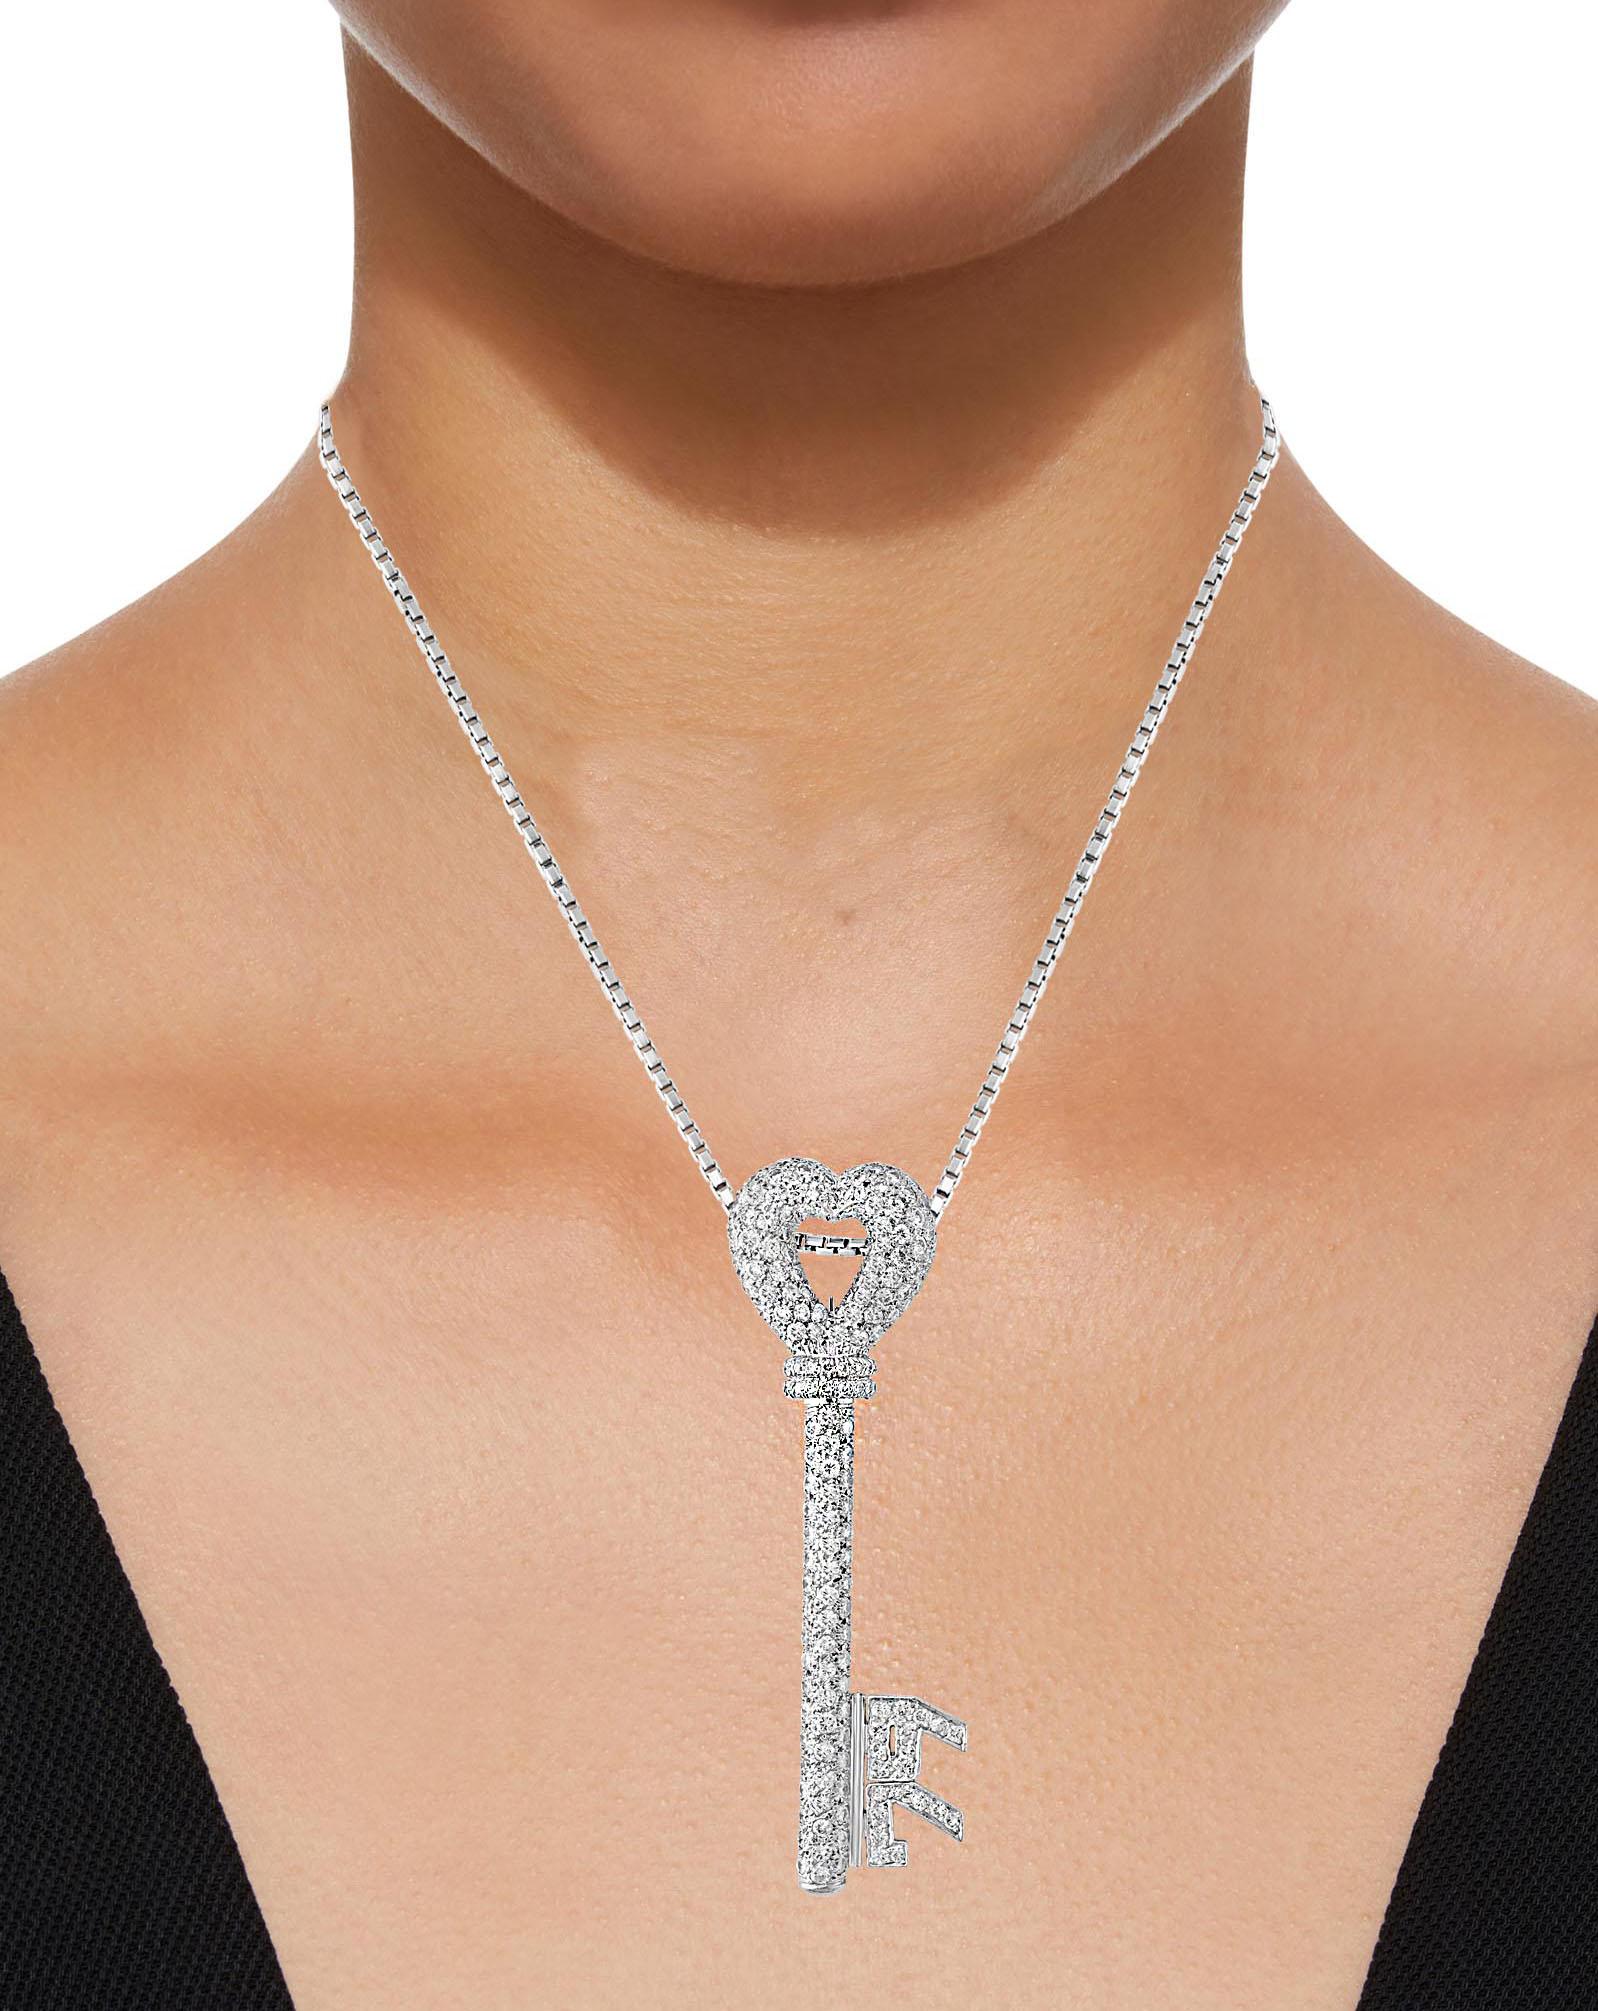 10 Carat Diamonds Key Necklace / Pin 18 Karat White Gold Designer Balestra 2